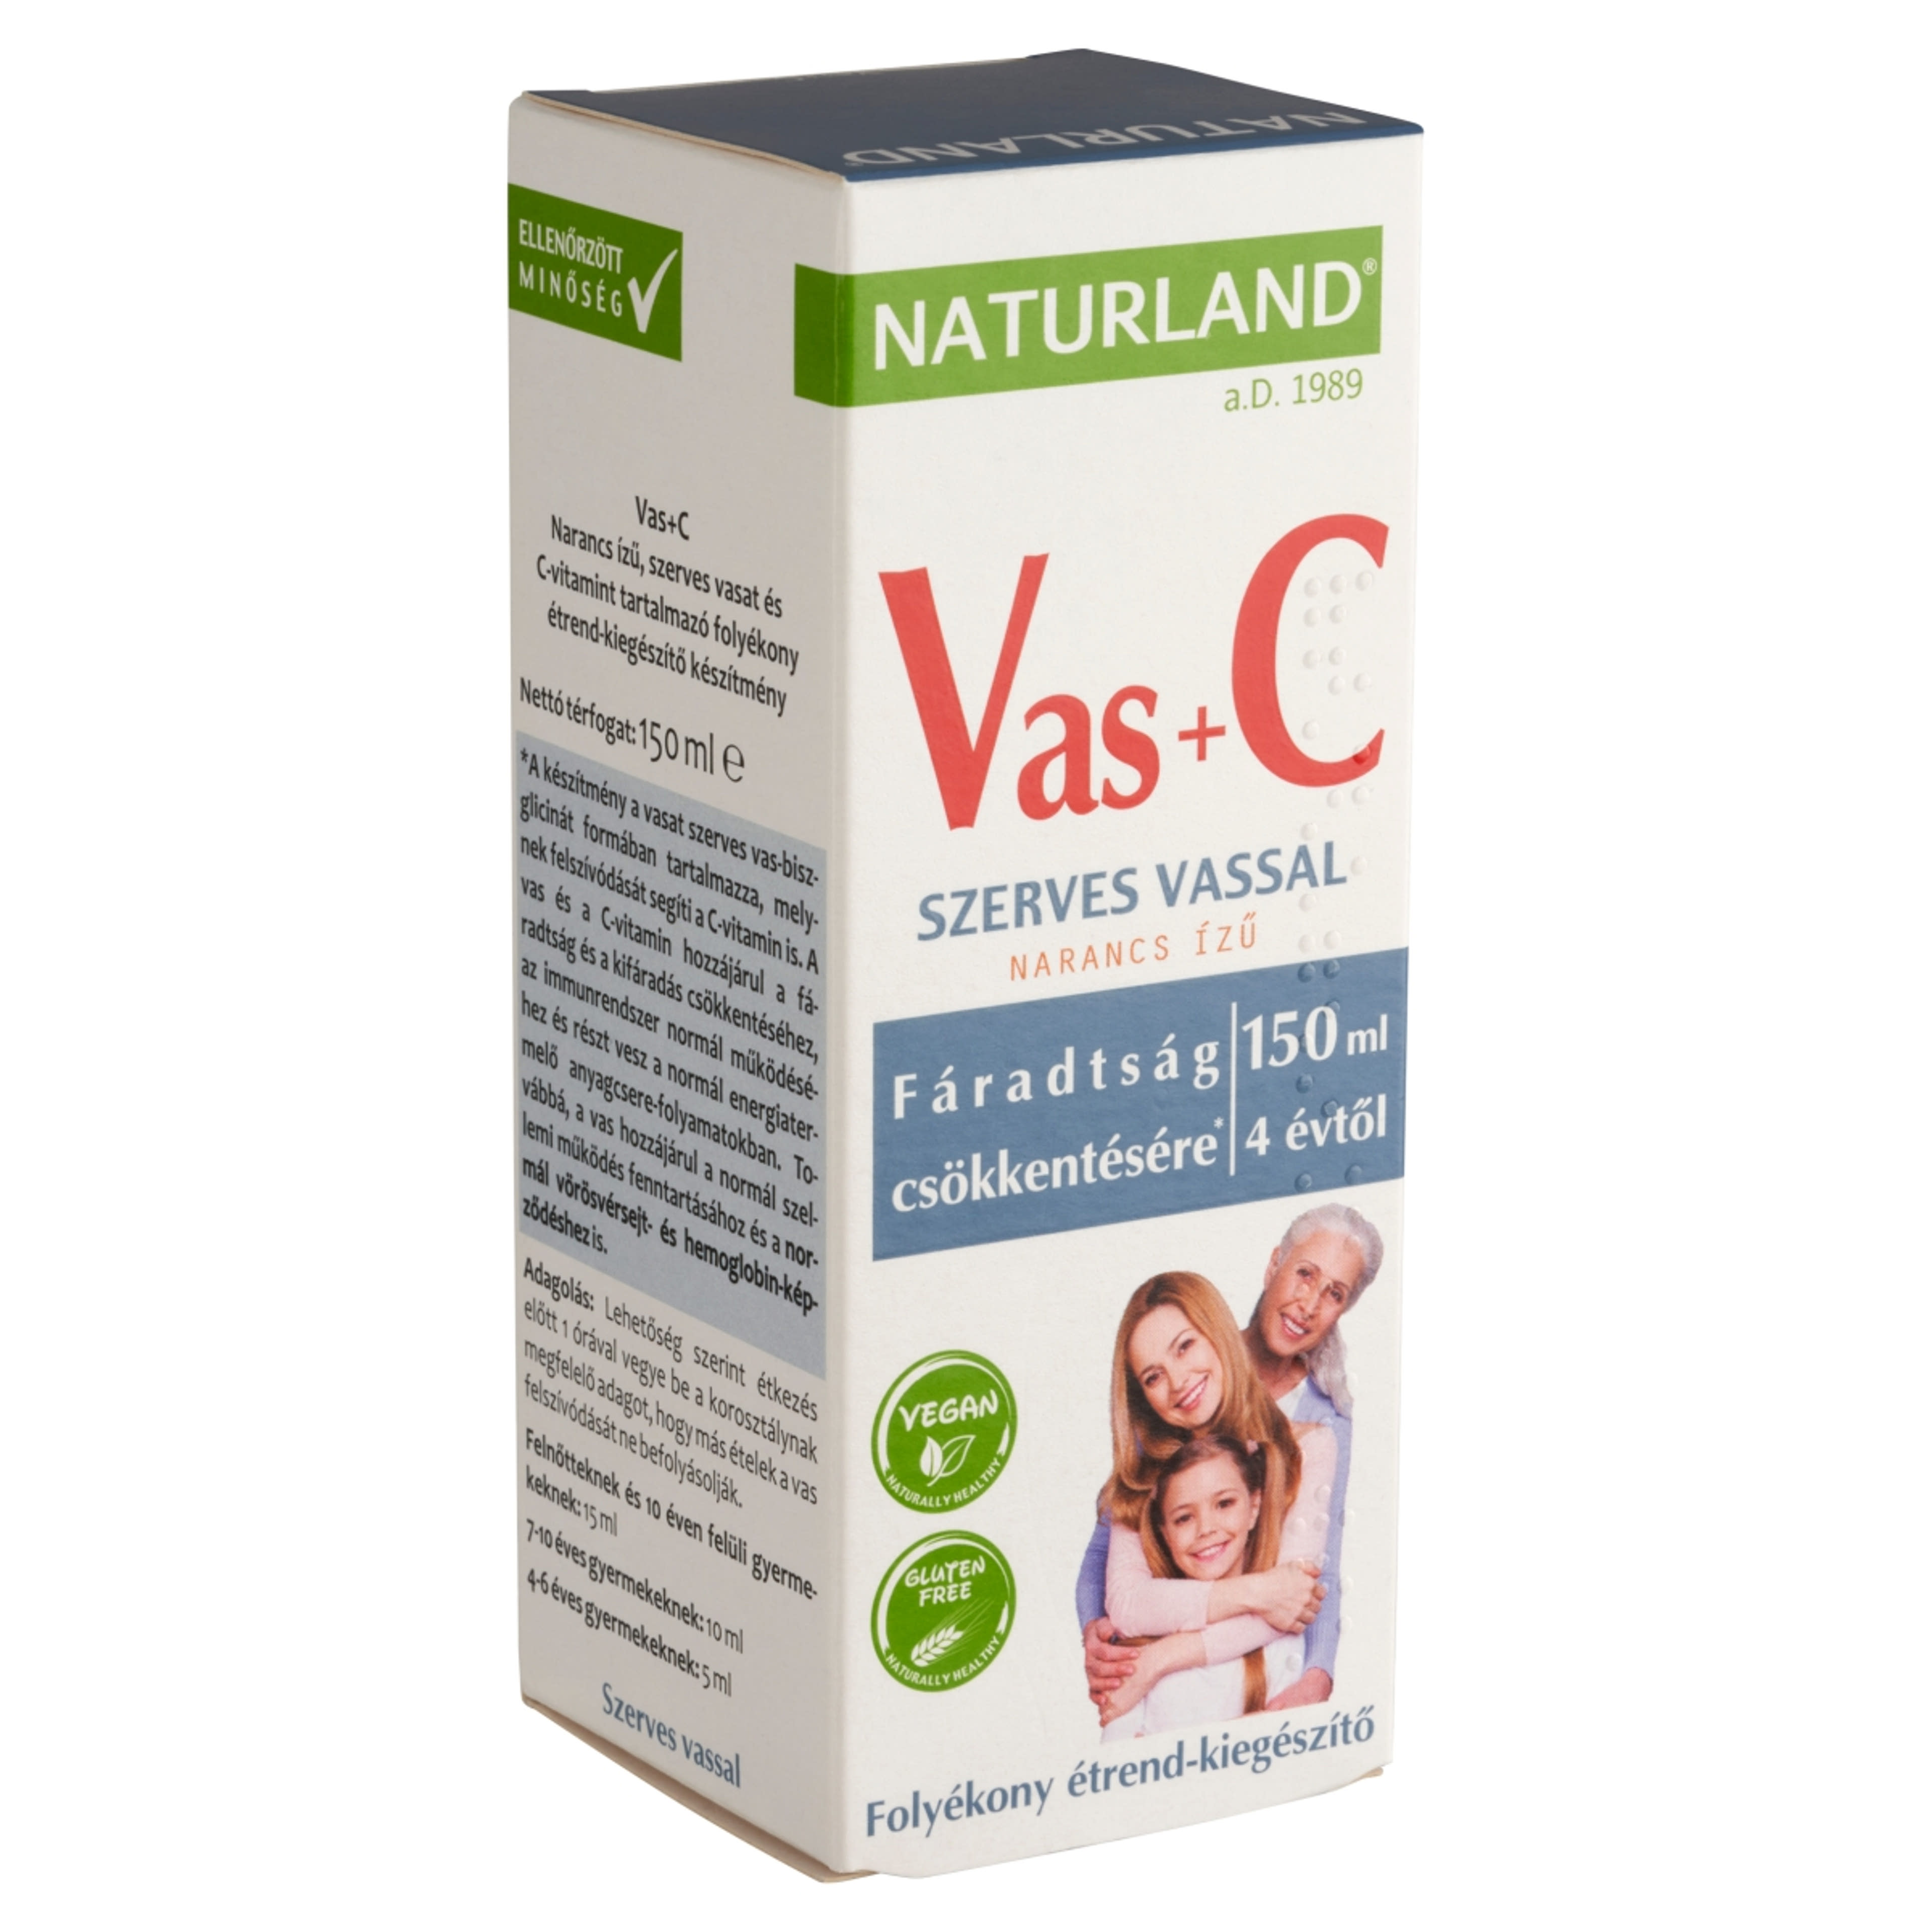 Naturland Vas+C folyékony étrend-kiegészítő készítmény narancs ízű  - 150 ml-2